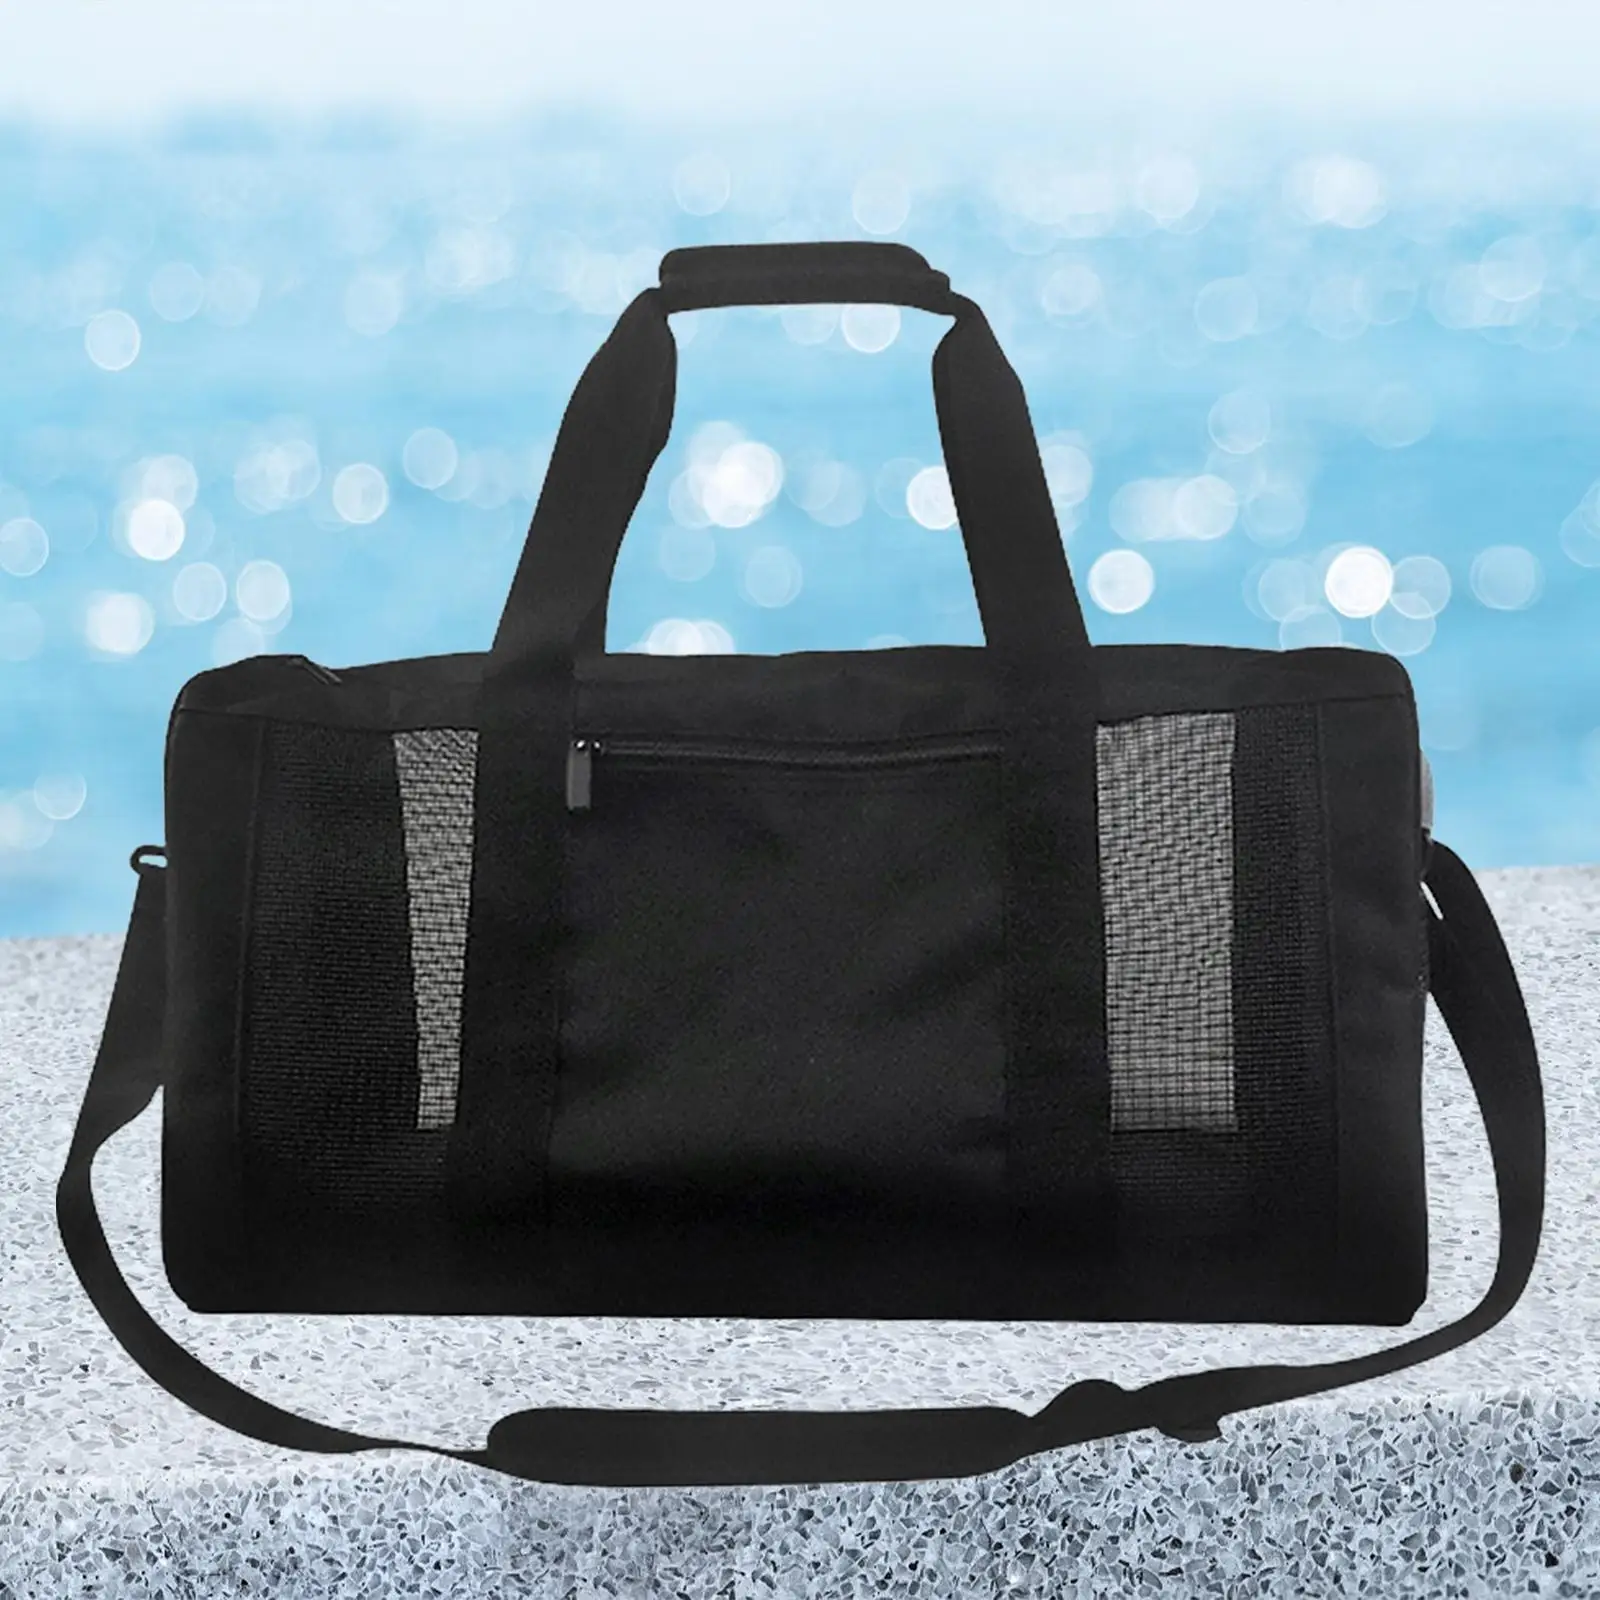 Mesh Gym Bag Travel Duffle Bag Adjustable Strap Cross Shoulder Gym Lightweight Travel Hiking Outdoor Sports Gym Bag Fitness Bag